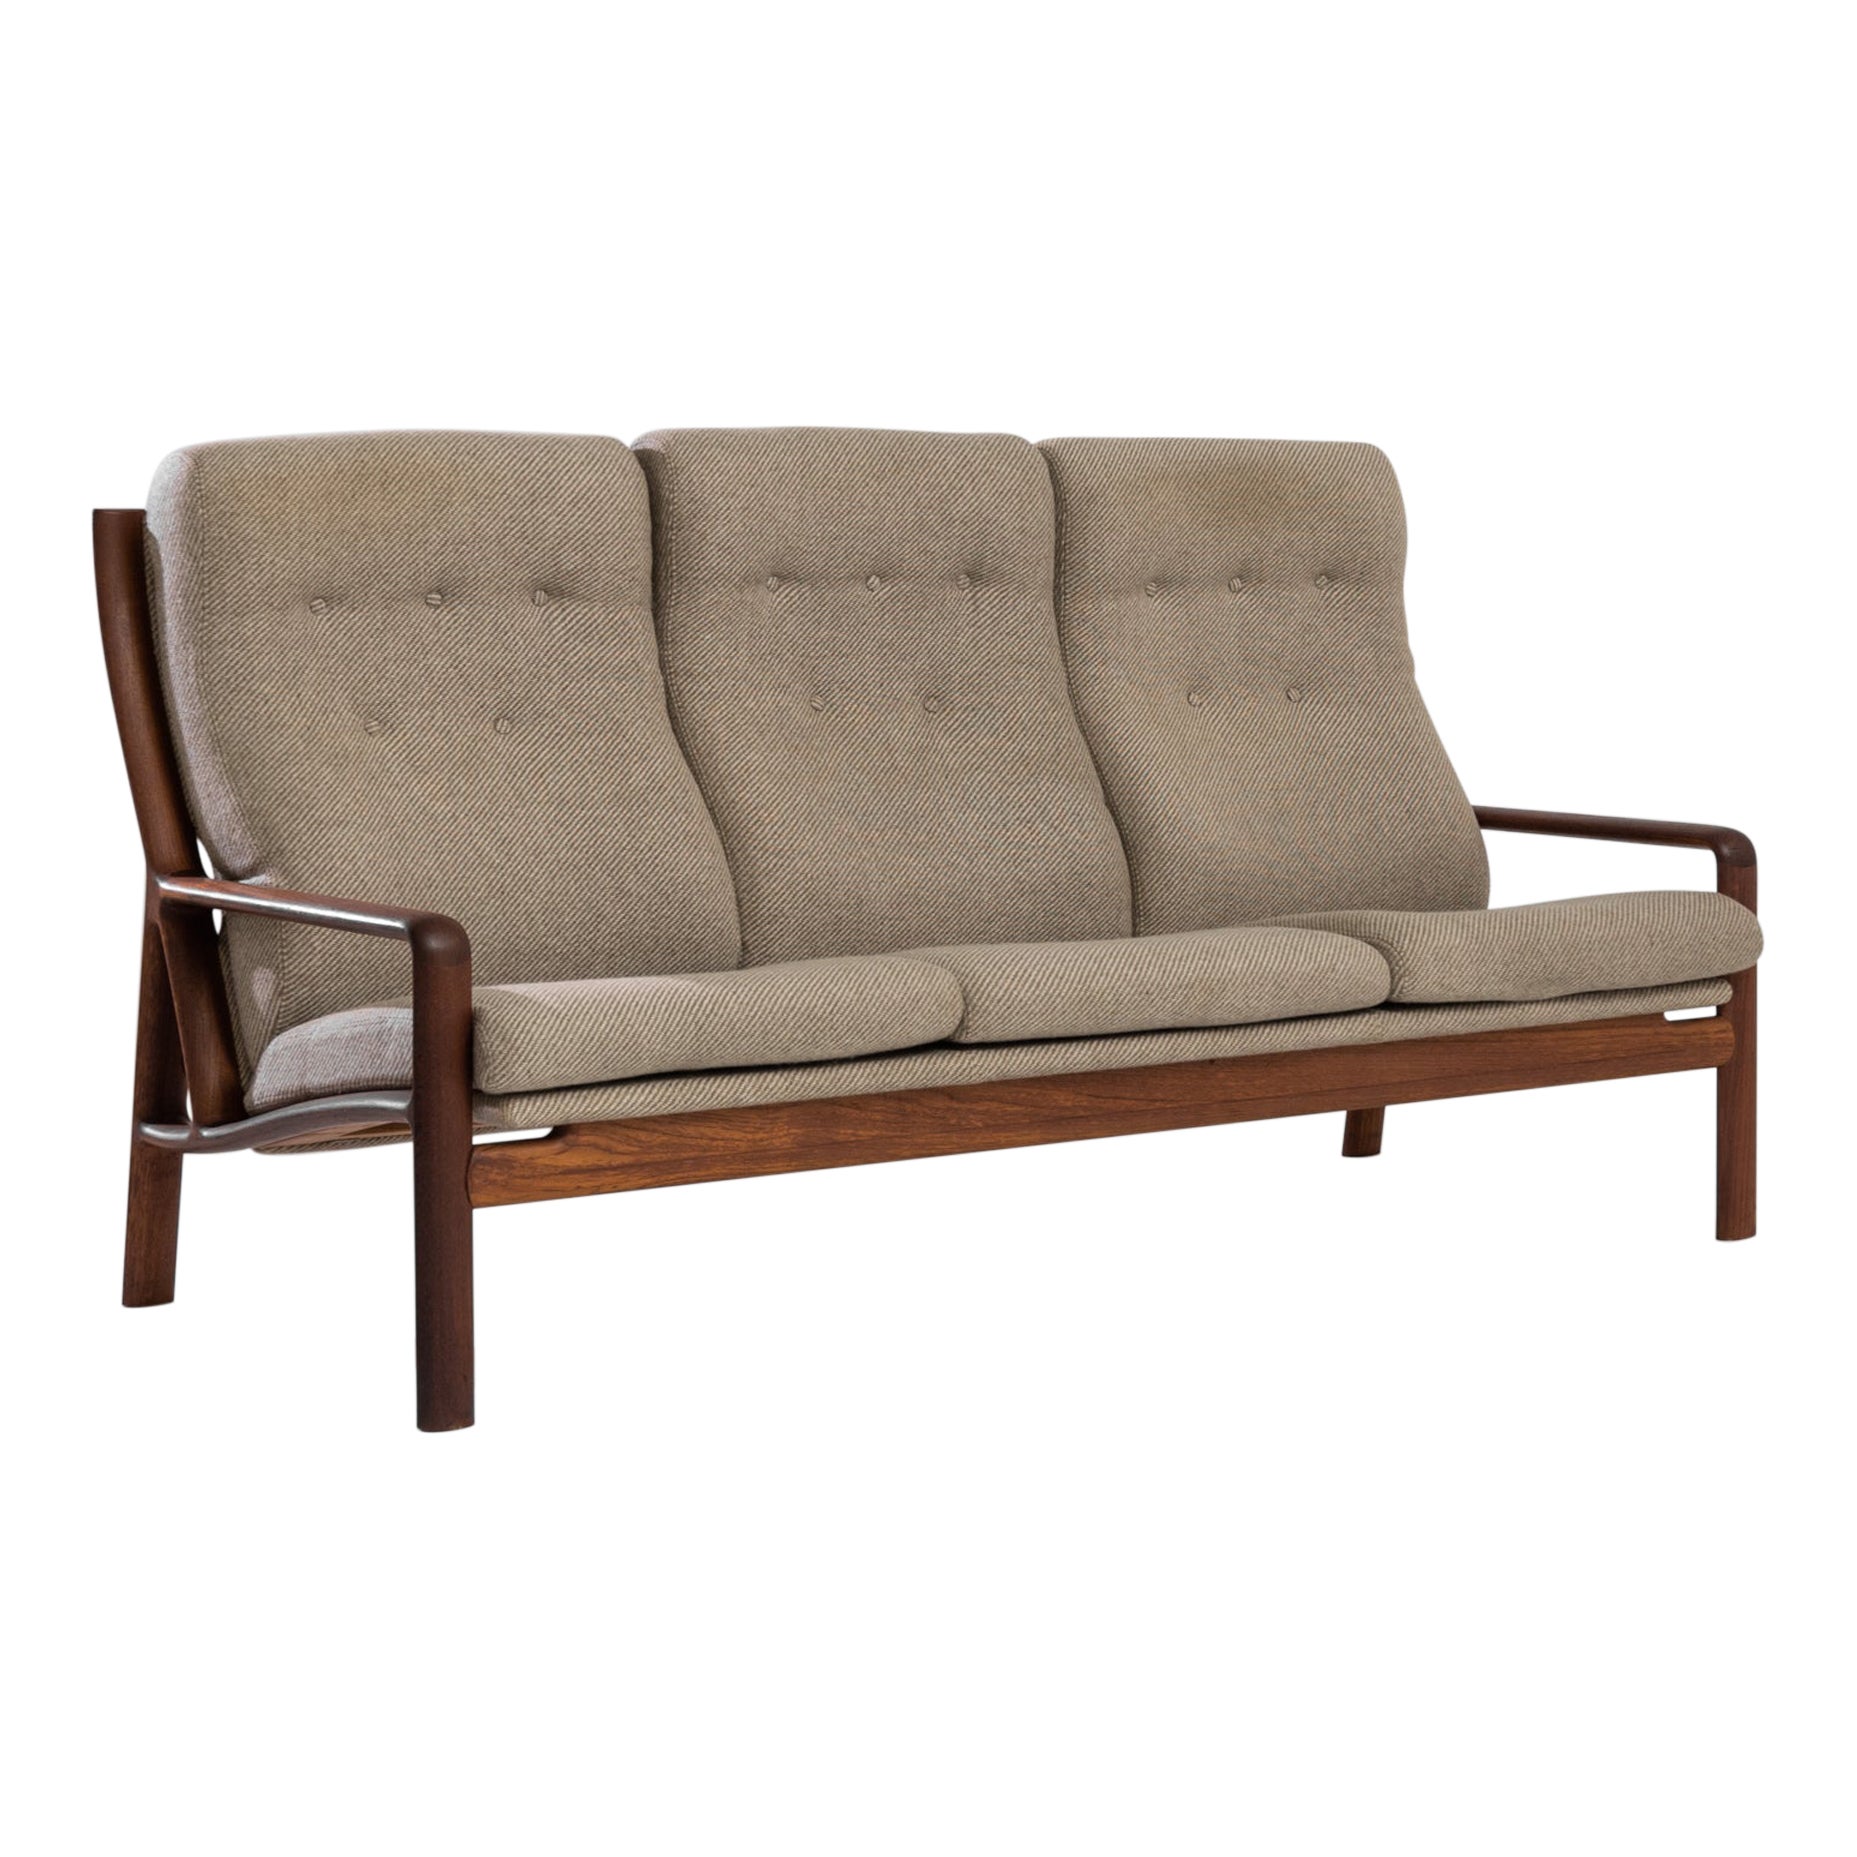 Danish Modern Corded Beige Upholstered Teak Sofa